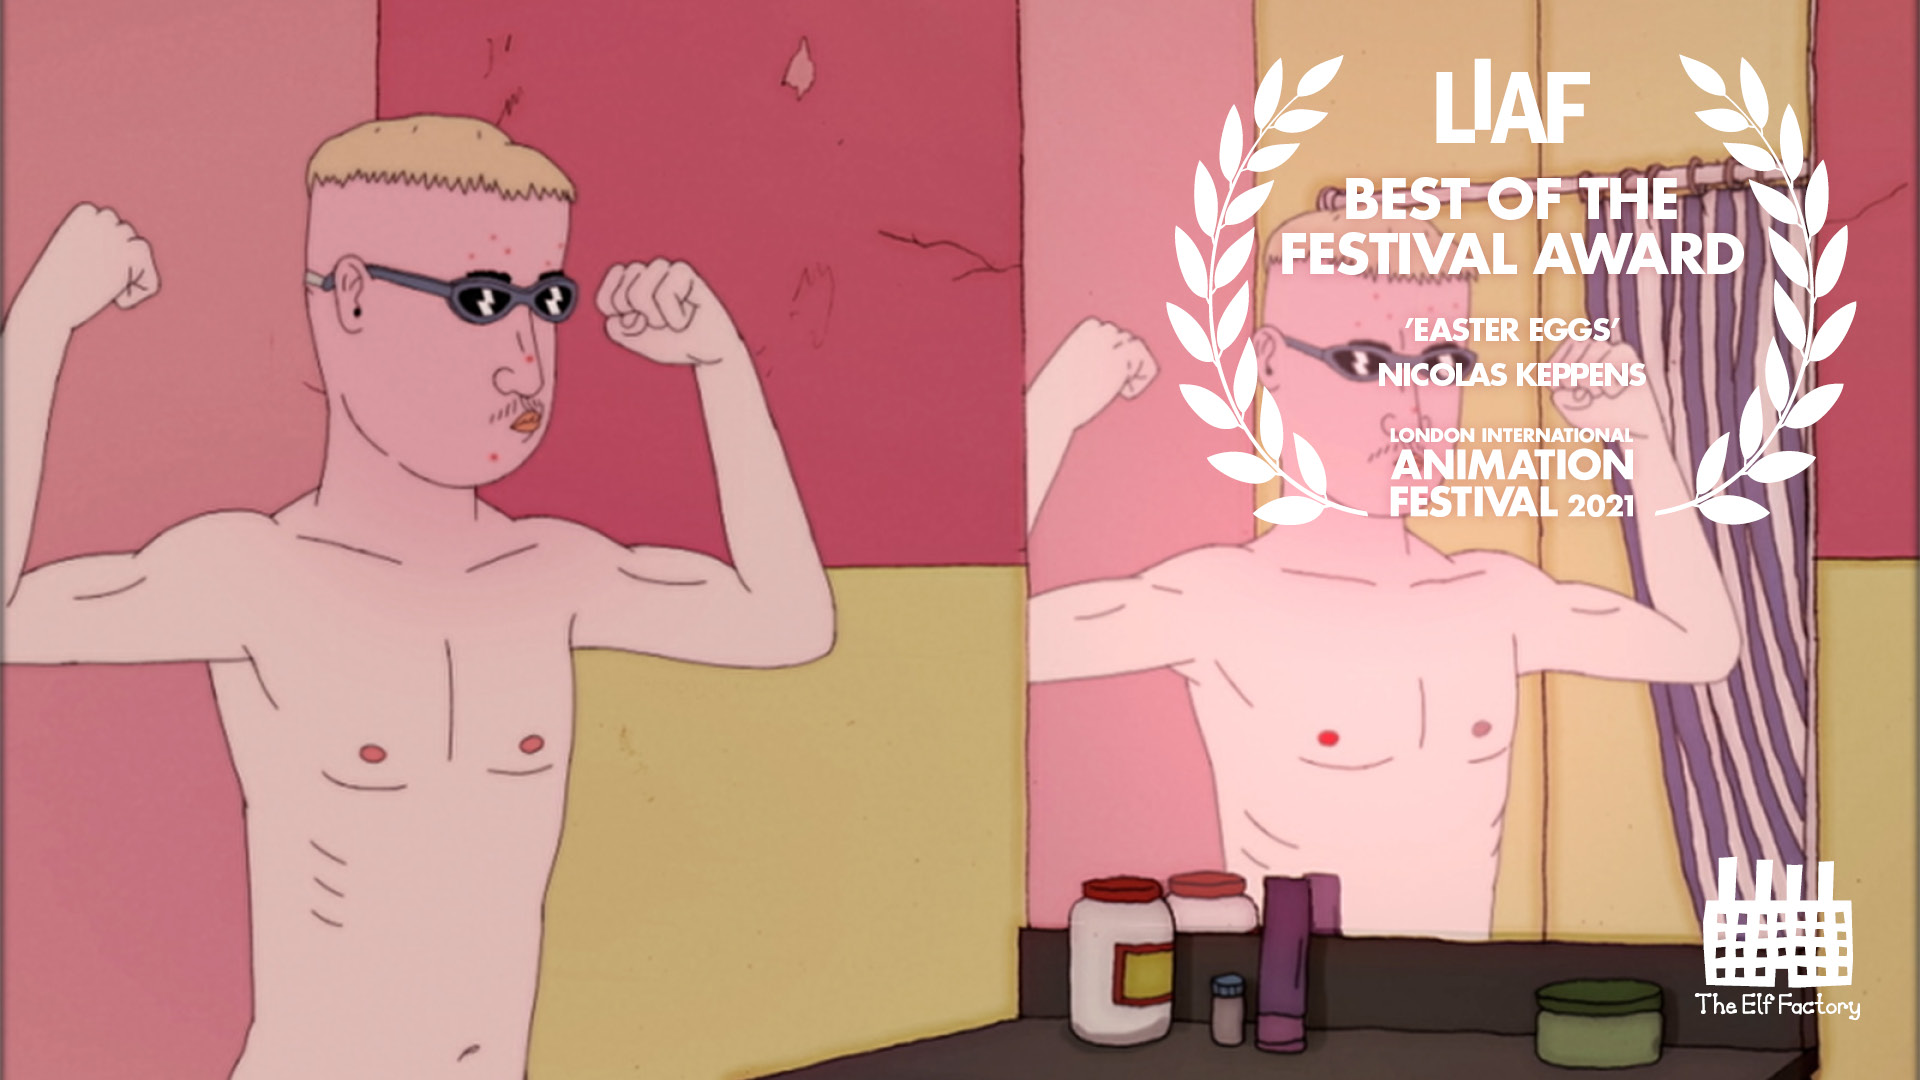 Best of the Festival Award, Easter Eggs, Nicolas Keppens, LIAF, London International Animation Festival